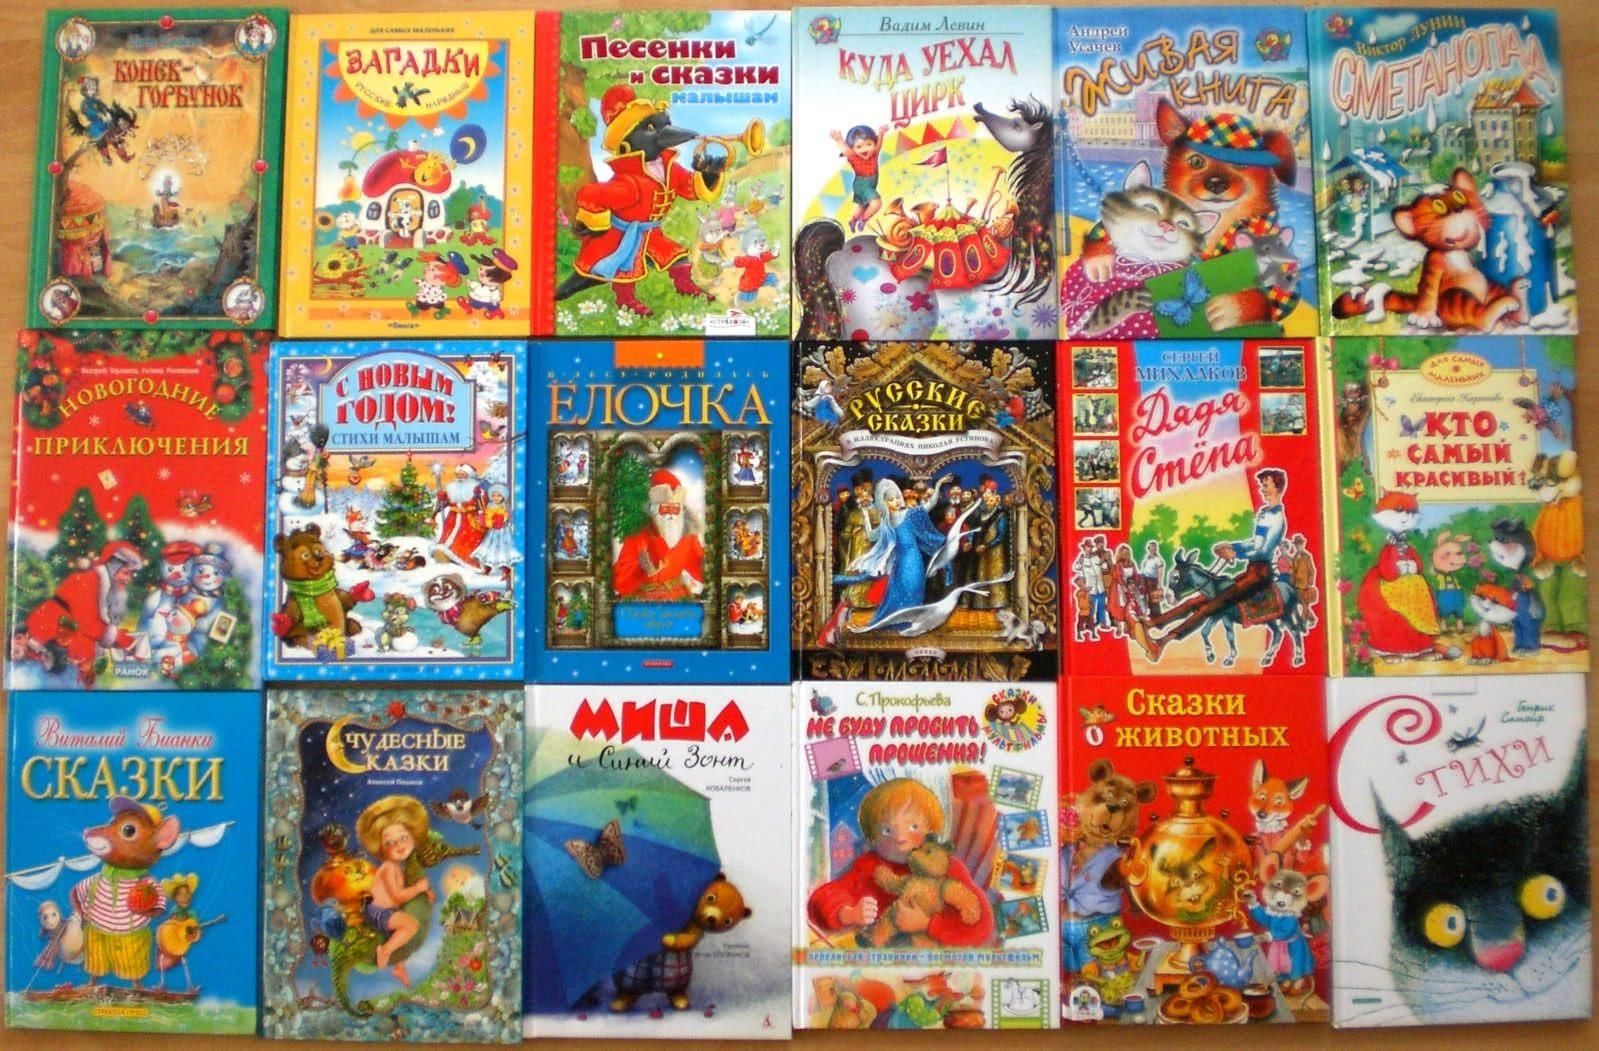 Название сказочных книг. Детские книги. Книга сказок для детей. Детский книжки. Художественная литература для дошкольников.